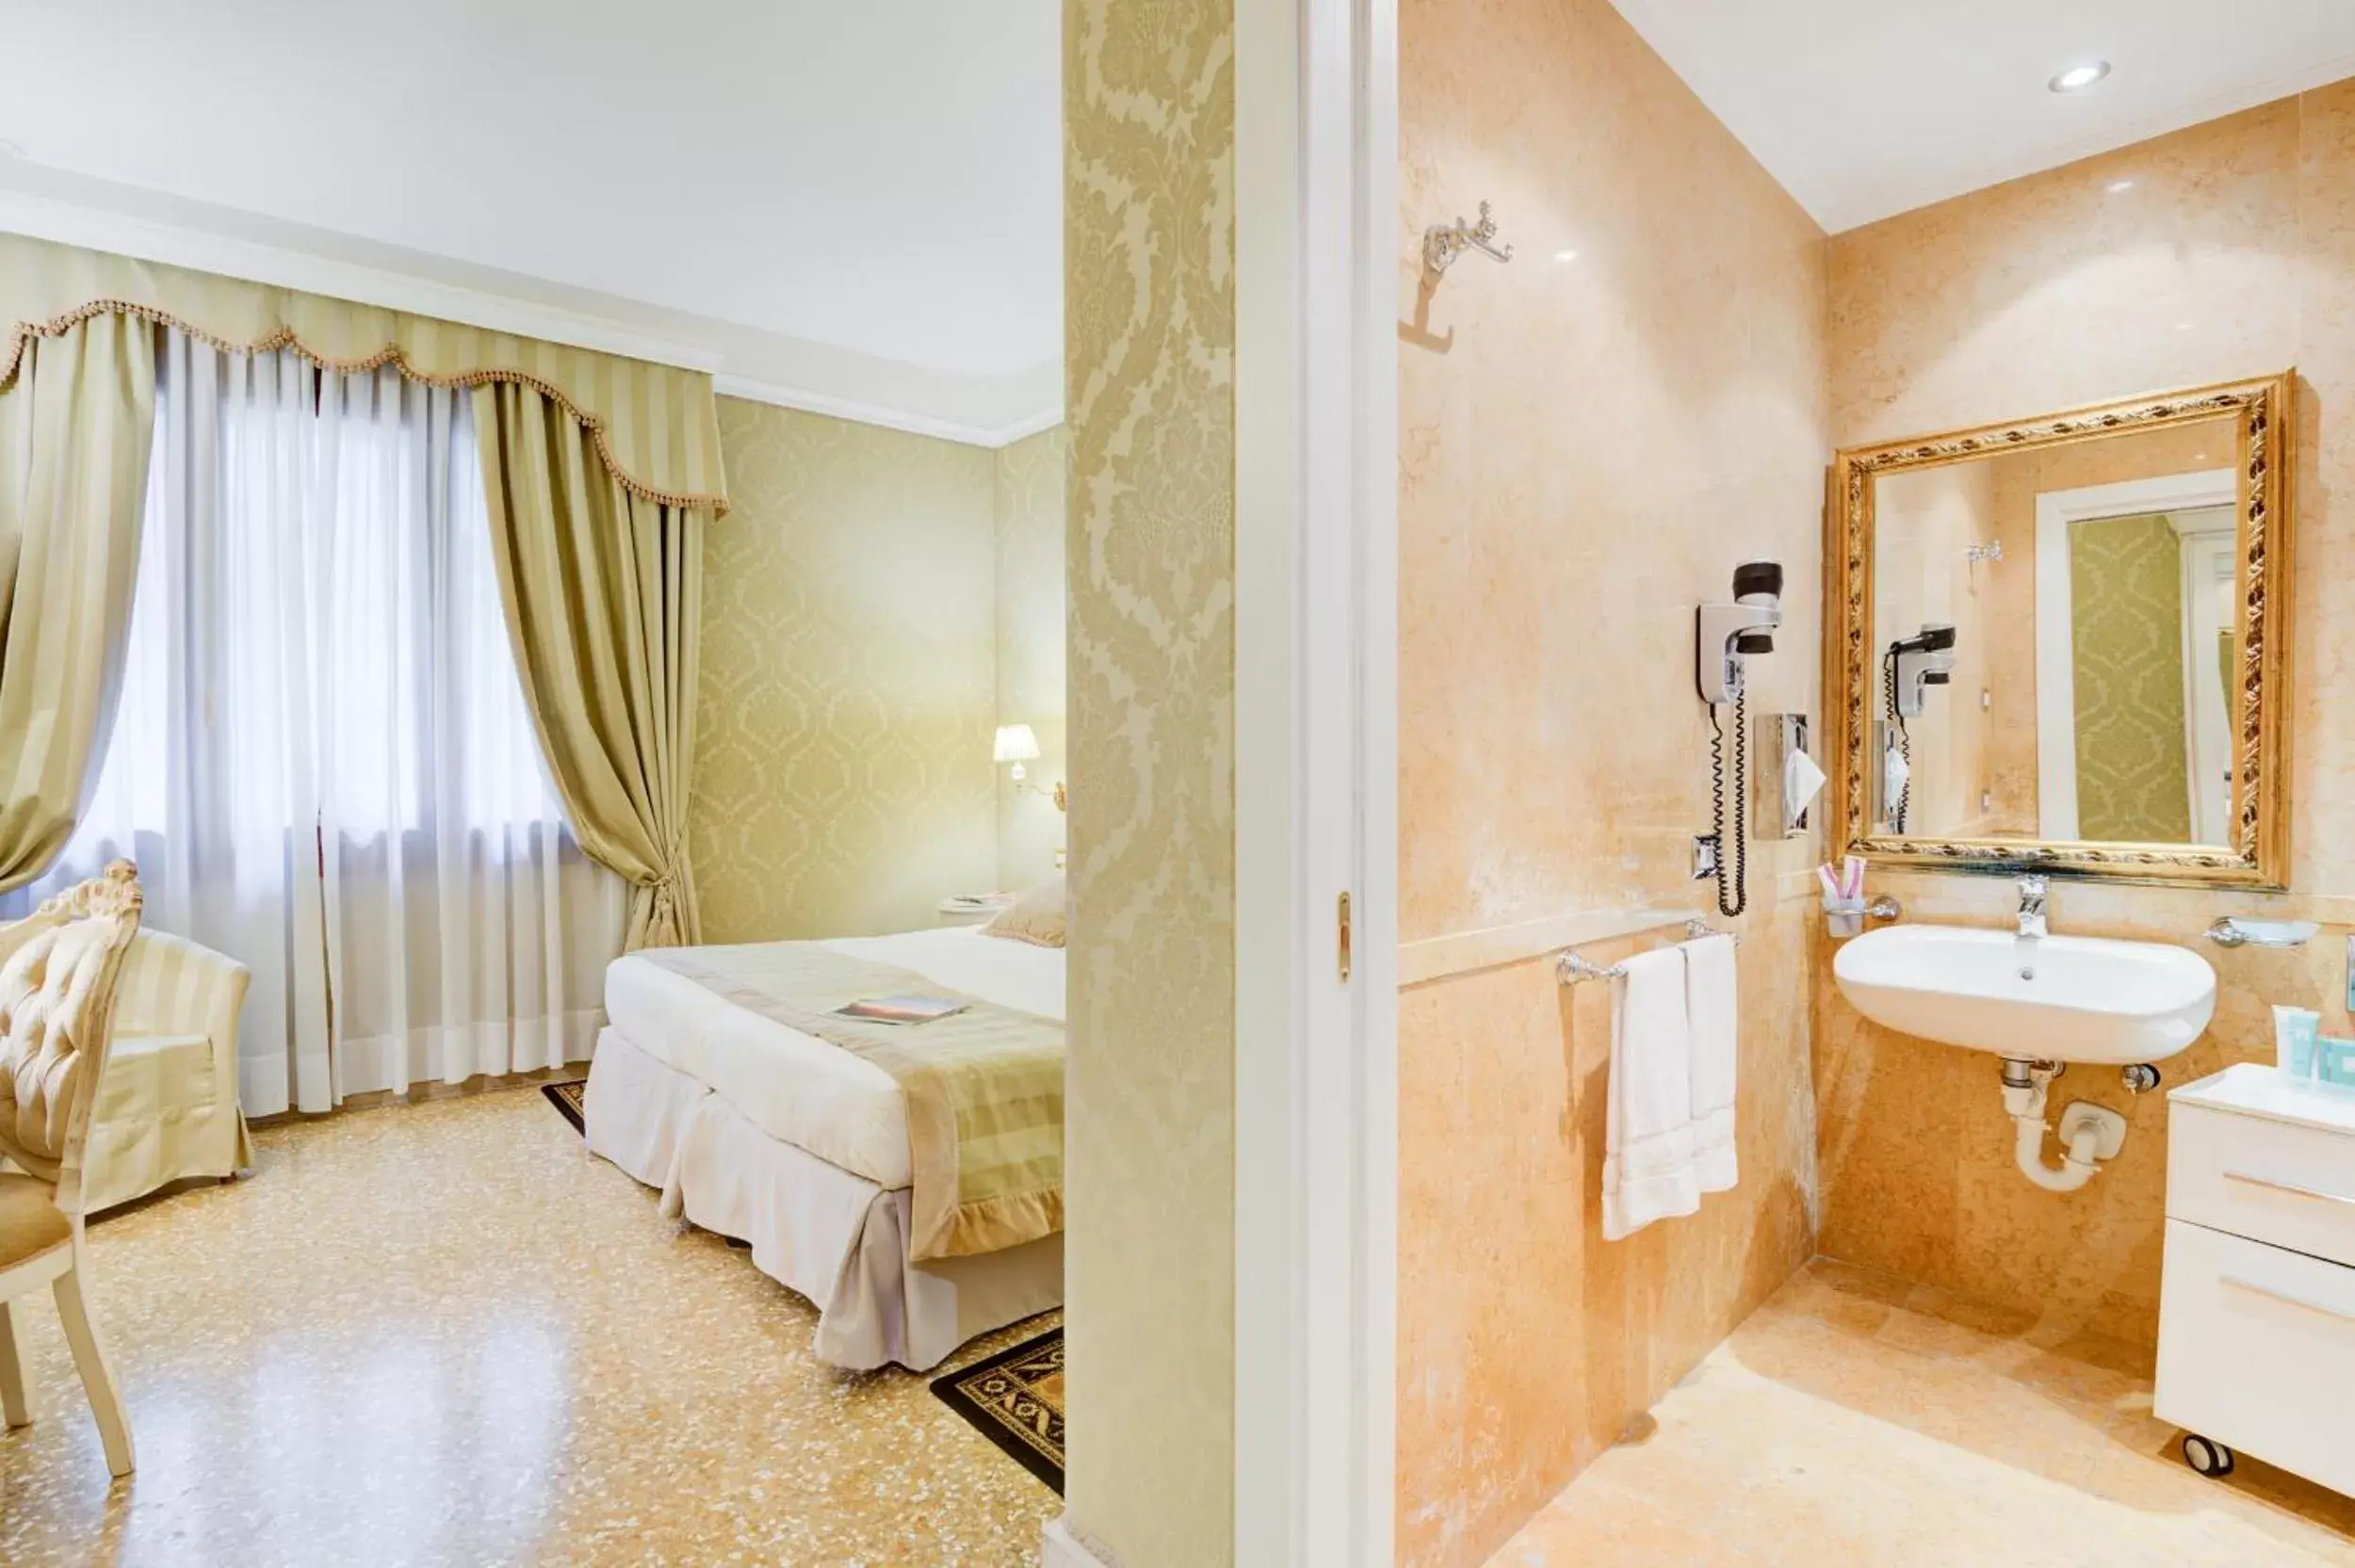 Photo of the whole room, Bathroom in Hotel Al Duca Di Venezia